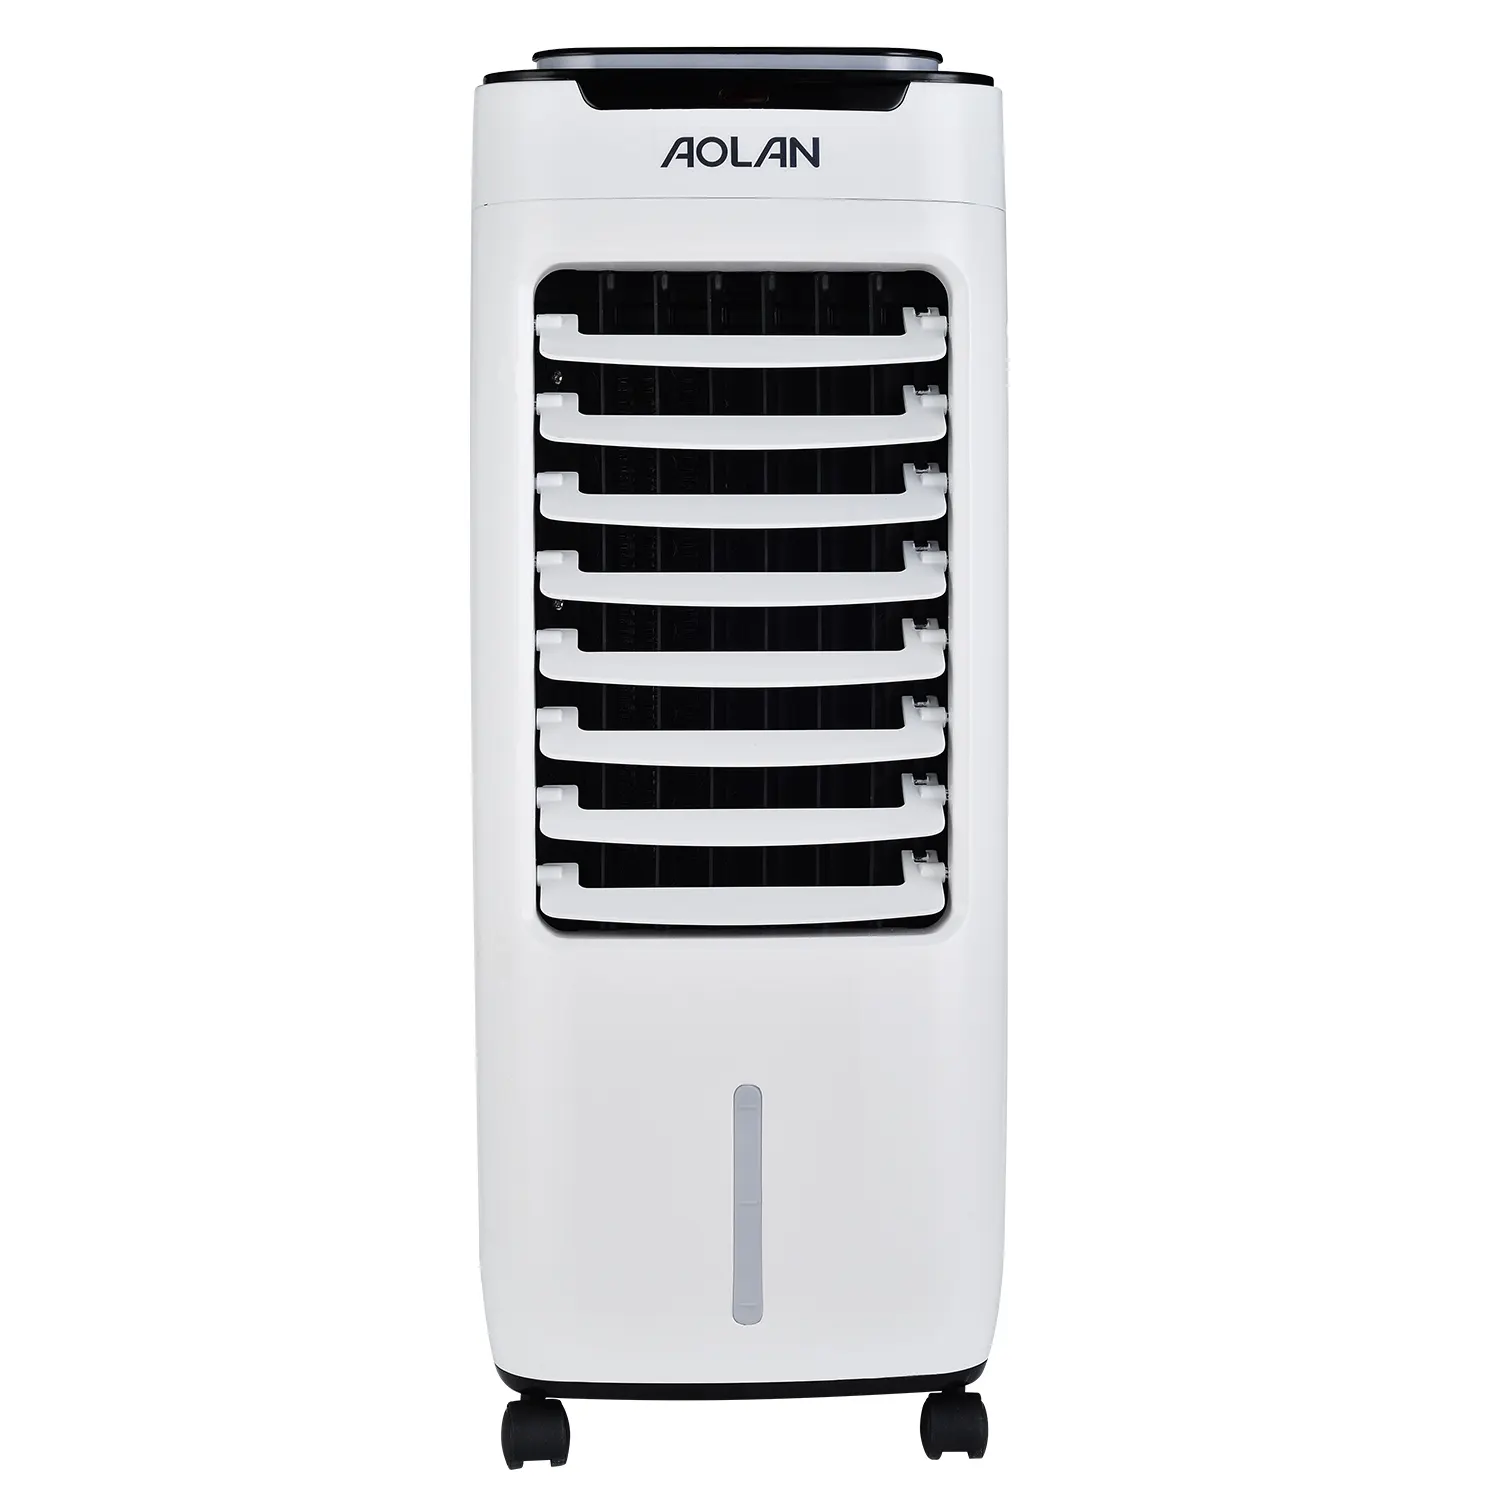 Piccolo ventilatore di aria condizionata, refrigeratore d'aria con raffreddamento e riscaldamento con un bel design per la scelta di raffreddamento evaporativo portatile